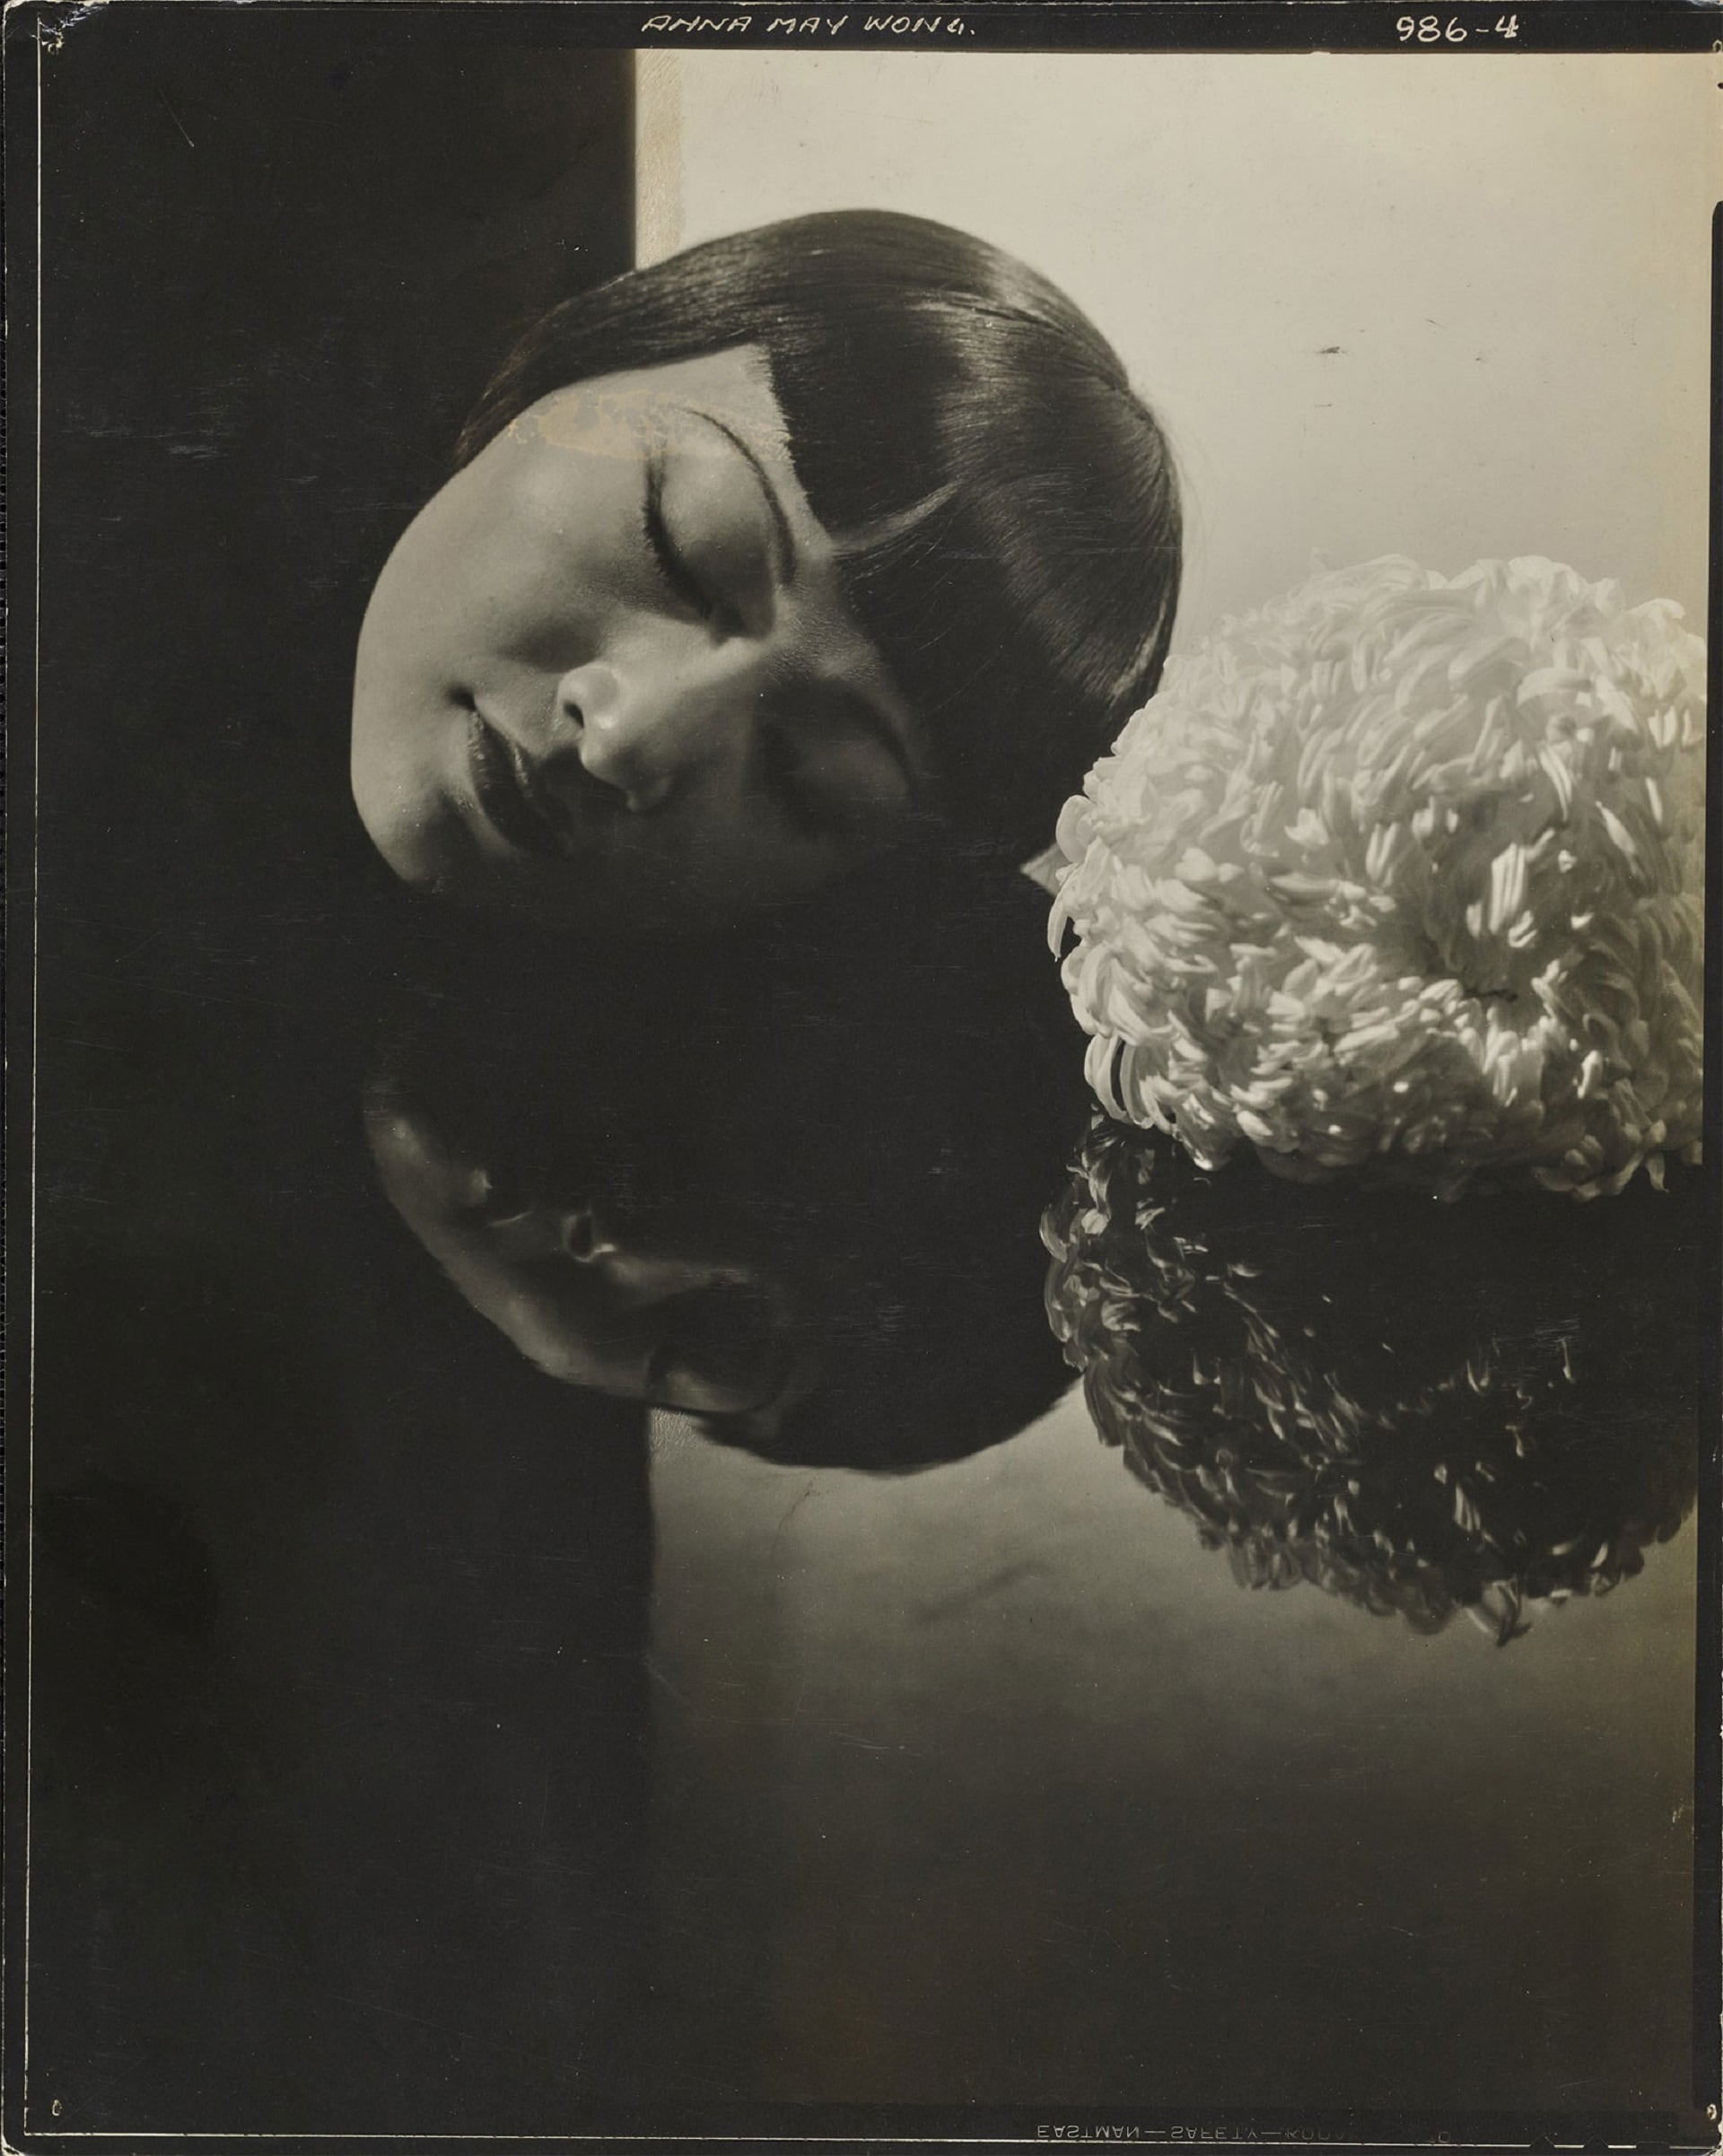 Edward Steichen, L’attrice Anna May Wong, 1930, Vanity Fair © Condé Nast